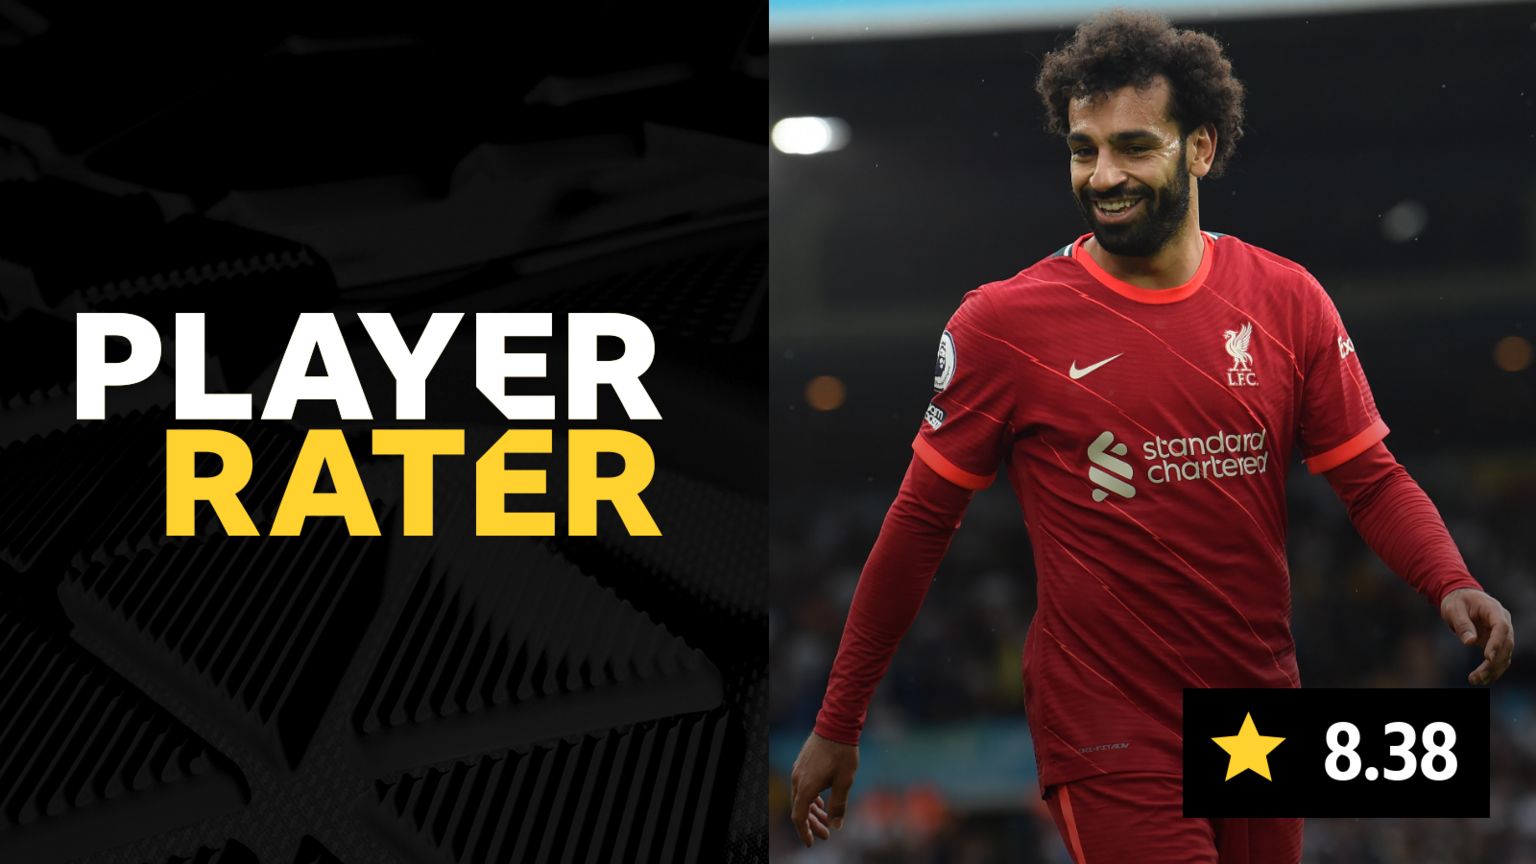 Mo Salah player rater - he scored 8.38